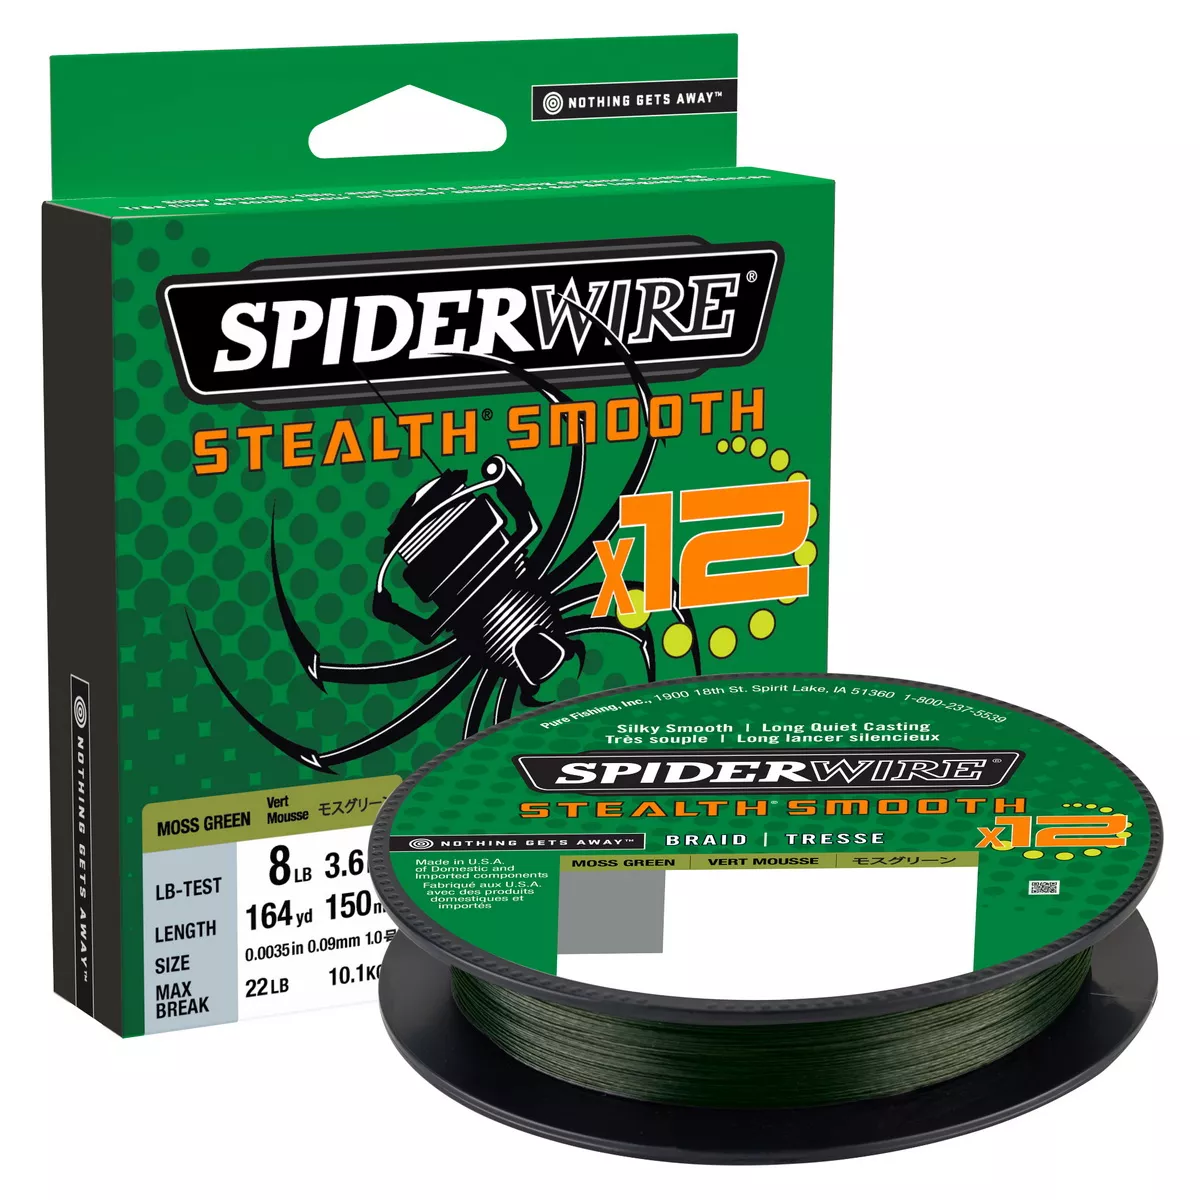 SPIDERWIRE Stealth Smooth 12 Braid 0,09mm 150m Moss Green 7,5kg geflochten